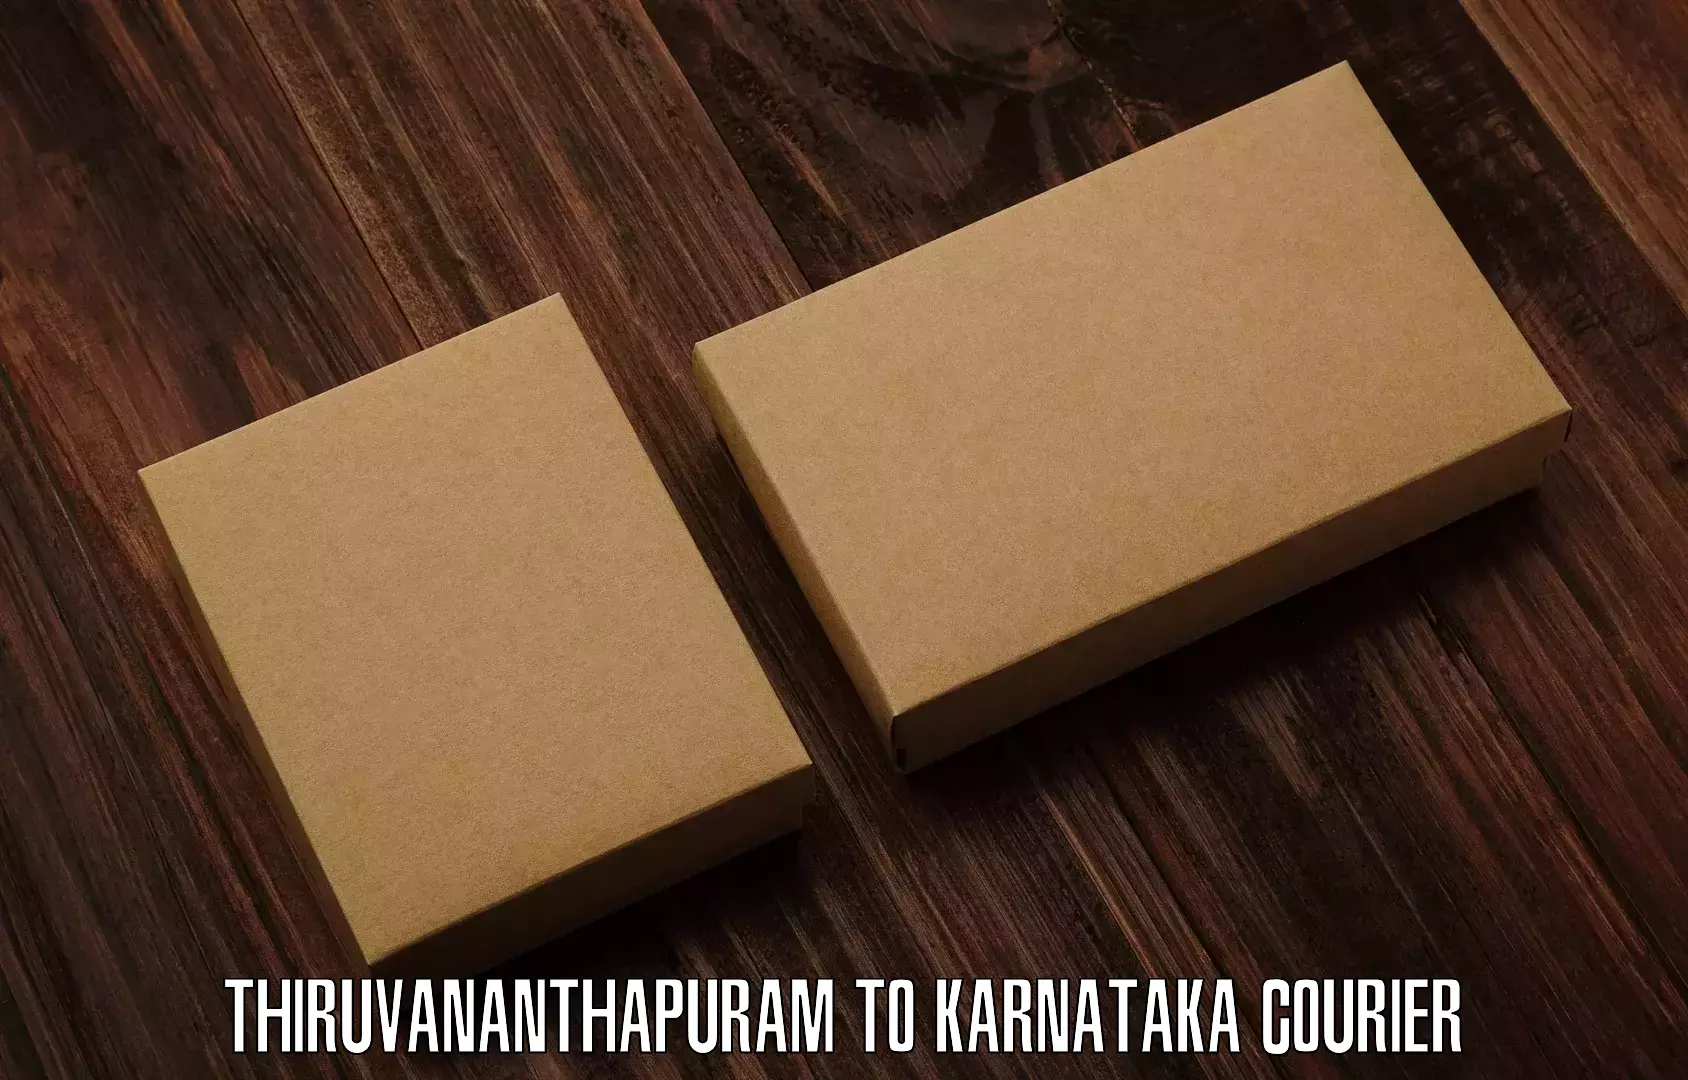 High-speed parcel service Thiruvananthapuram to Kotturu